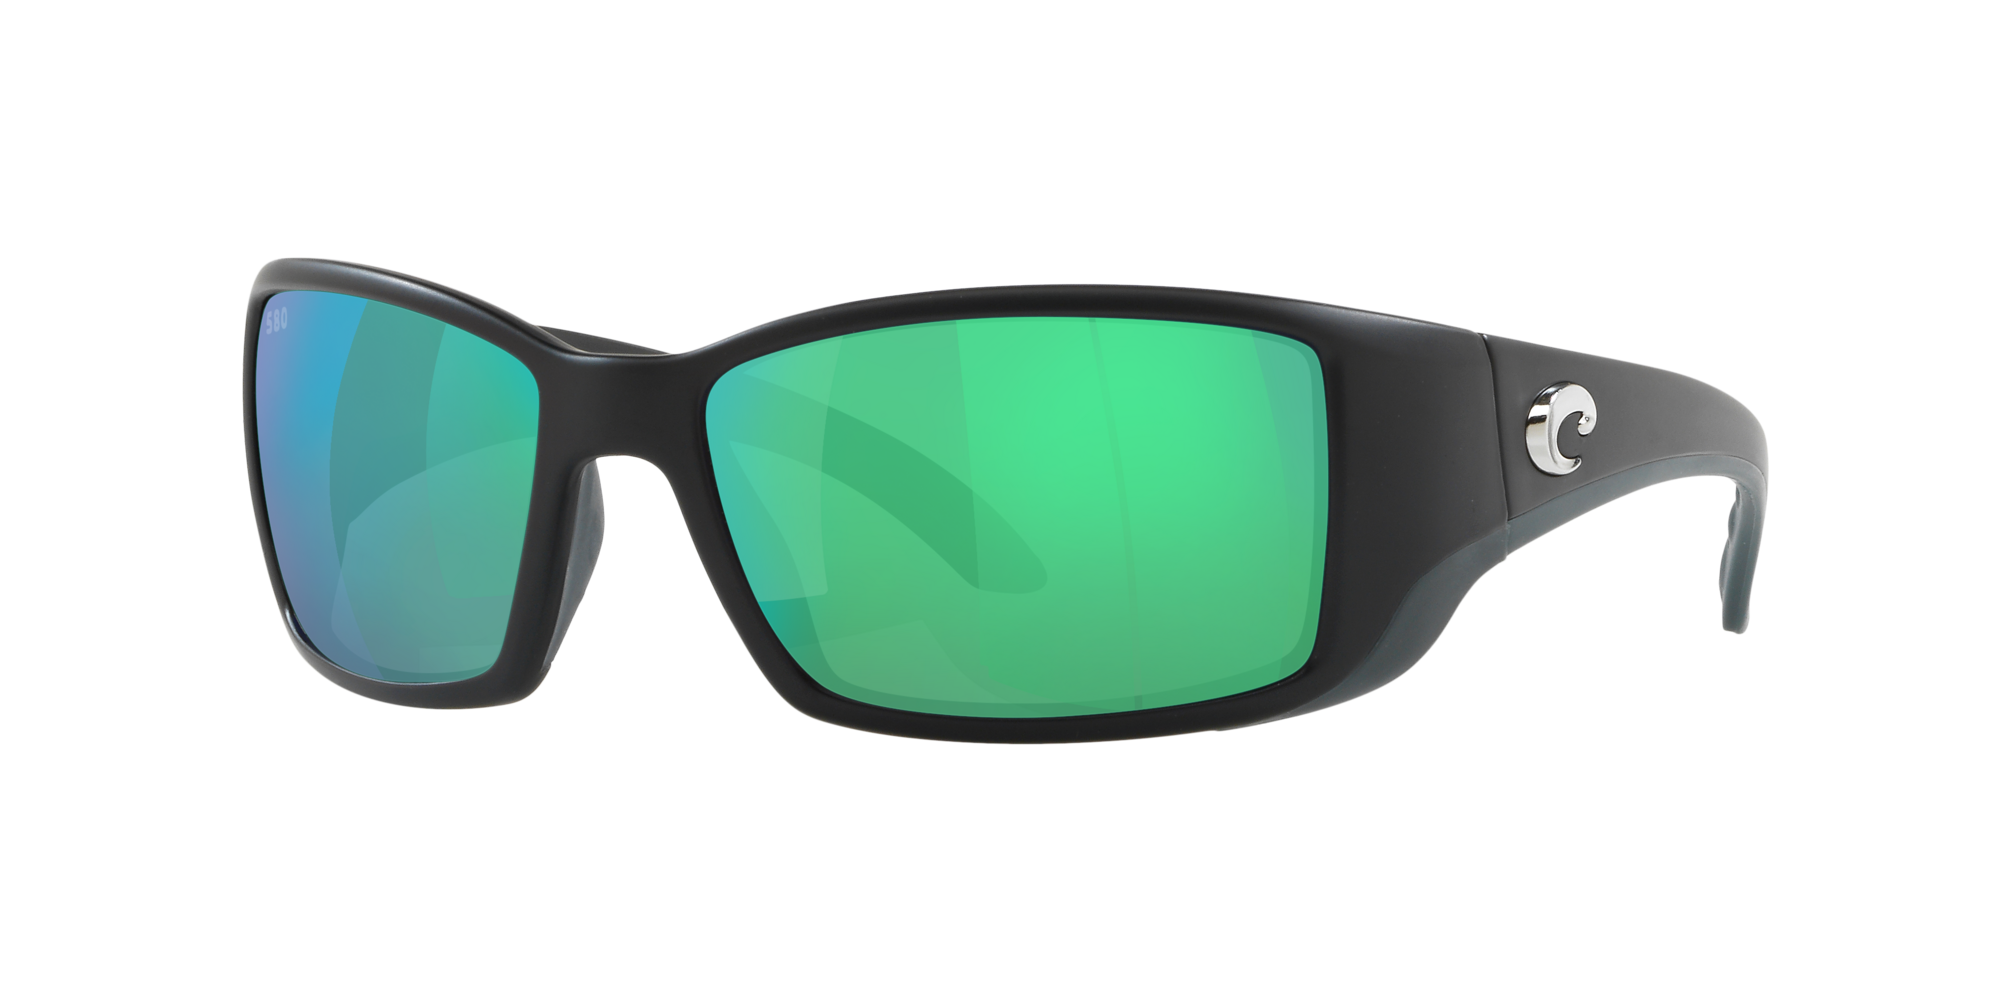 Costa Del Mar Galaxy Anti-Sea Lens For Costa Del Mar Blackfin Sunglasses Black/Blue/Green/Red 